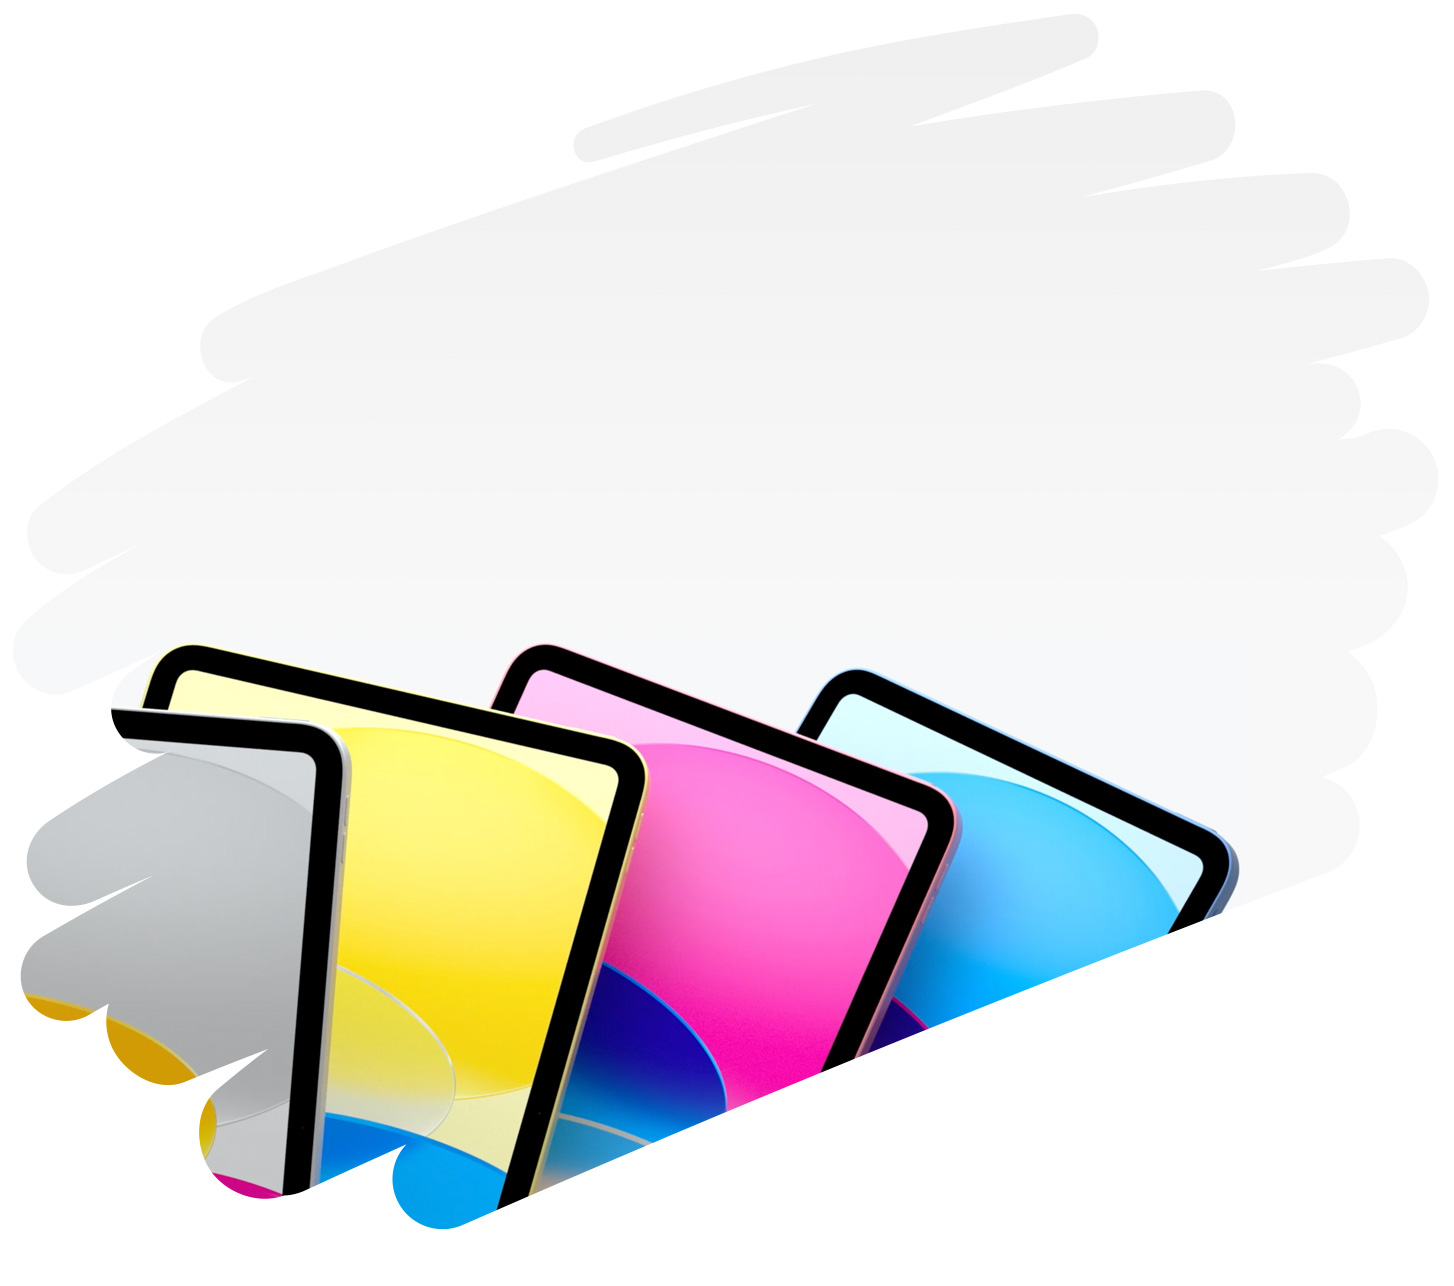 頁面背景以畫筆大範圍繪成，上面展示了幾款色彩繽紛的 iPad。